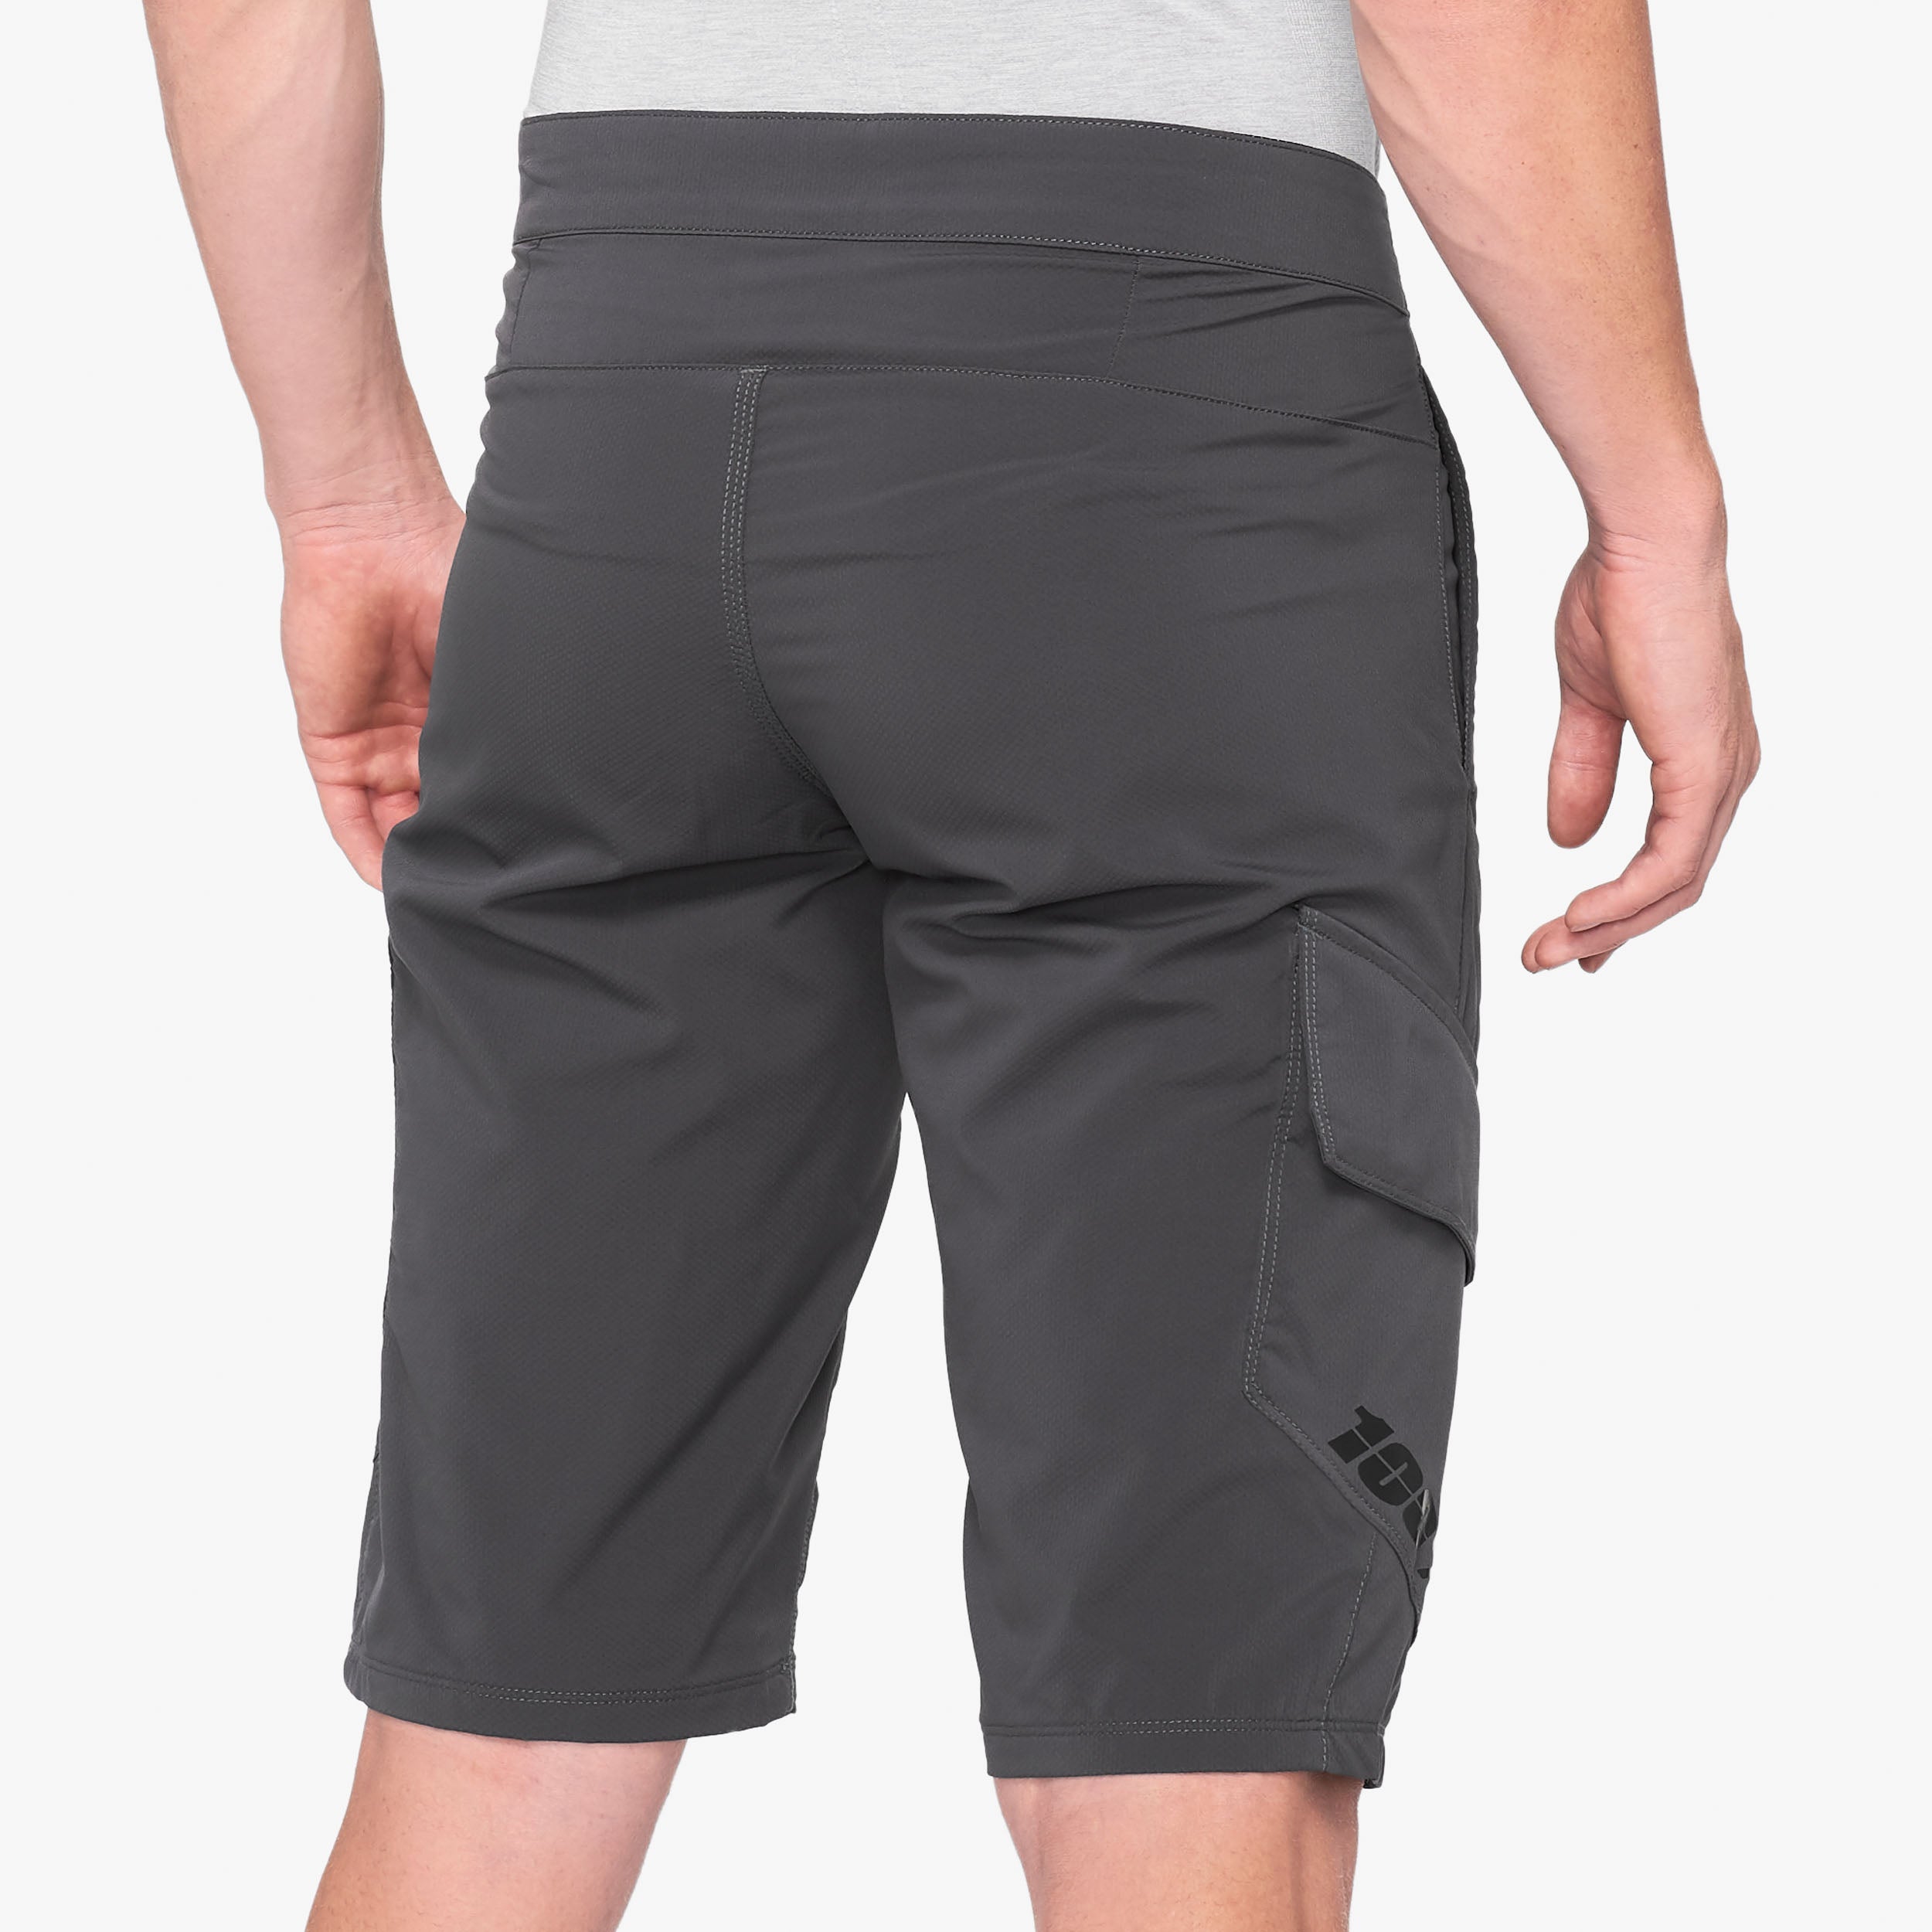 RIDECAMP Shorts - Charcoal